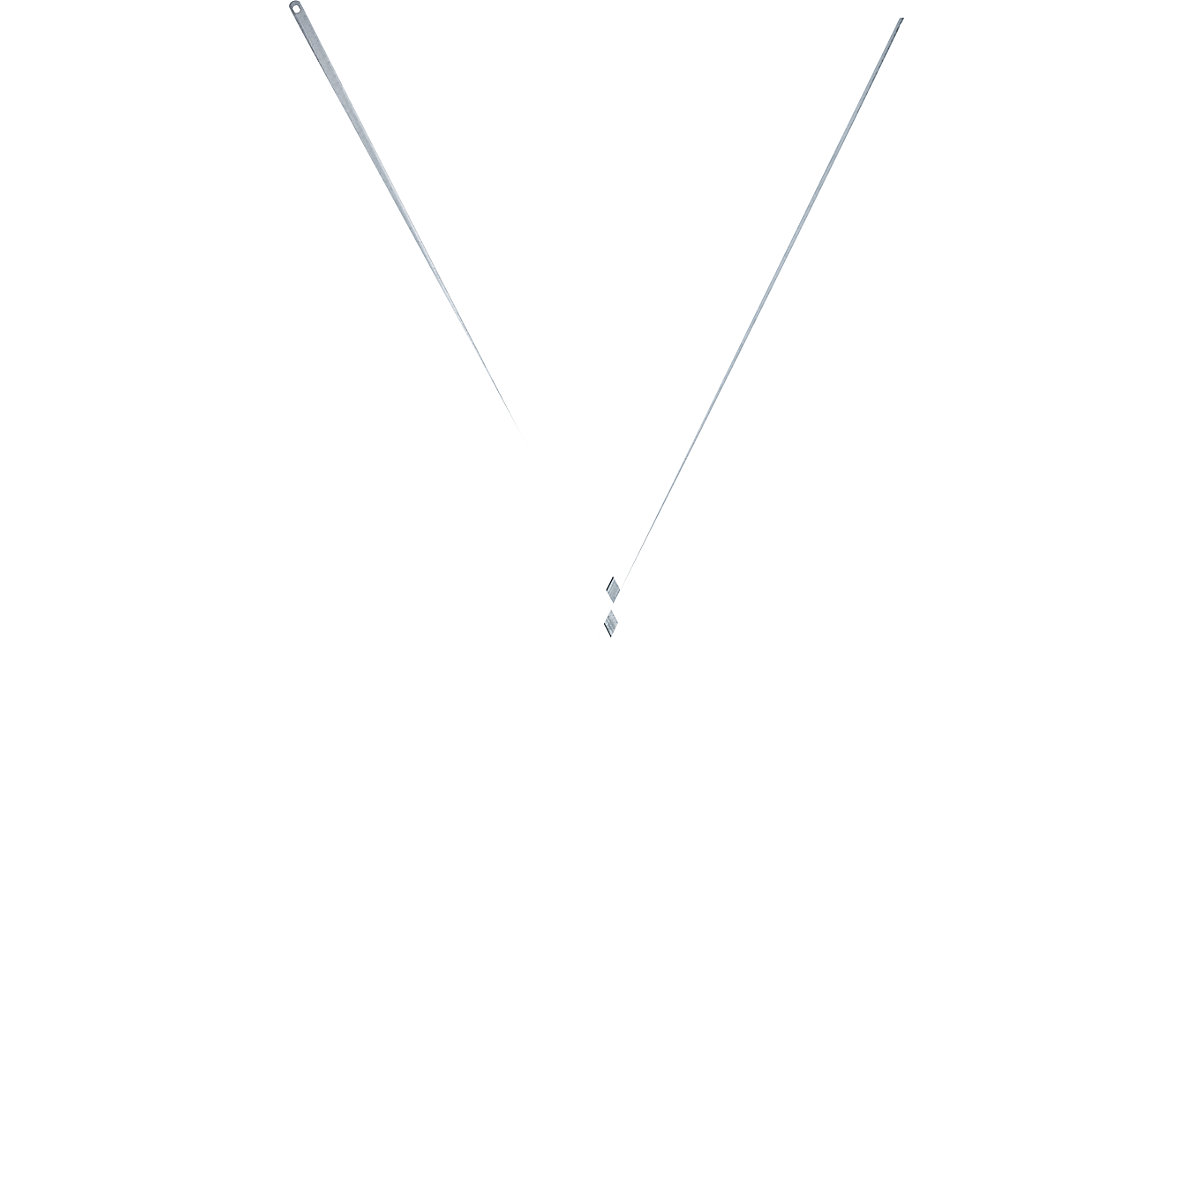 Dijagonalni križ – LISTA, za visinu regala 2000 mm, za širinu 1290 mm-2